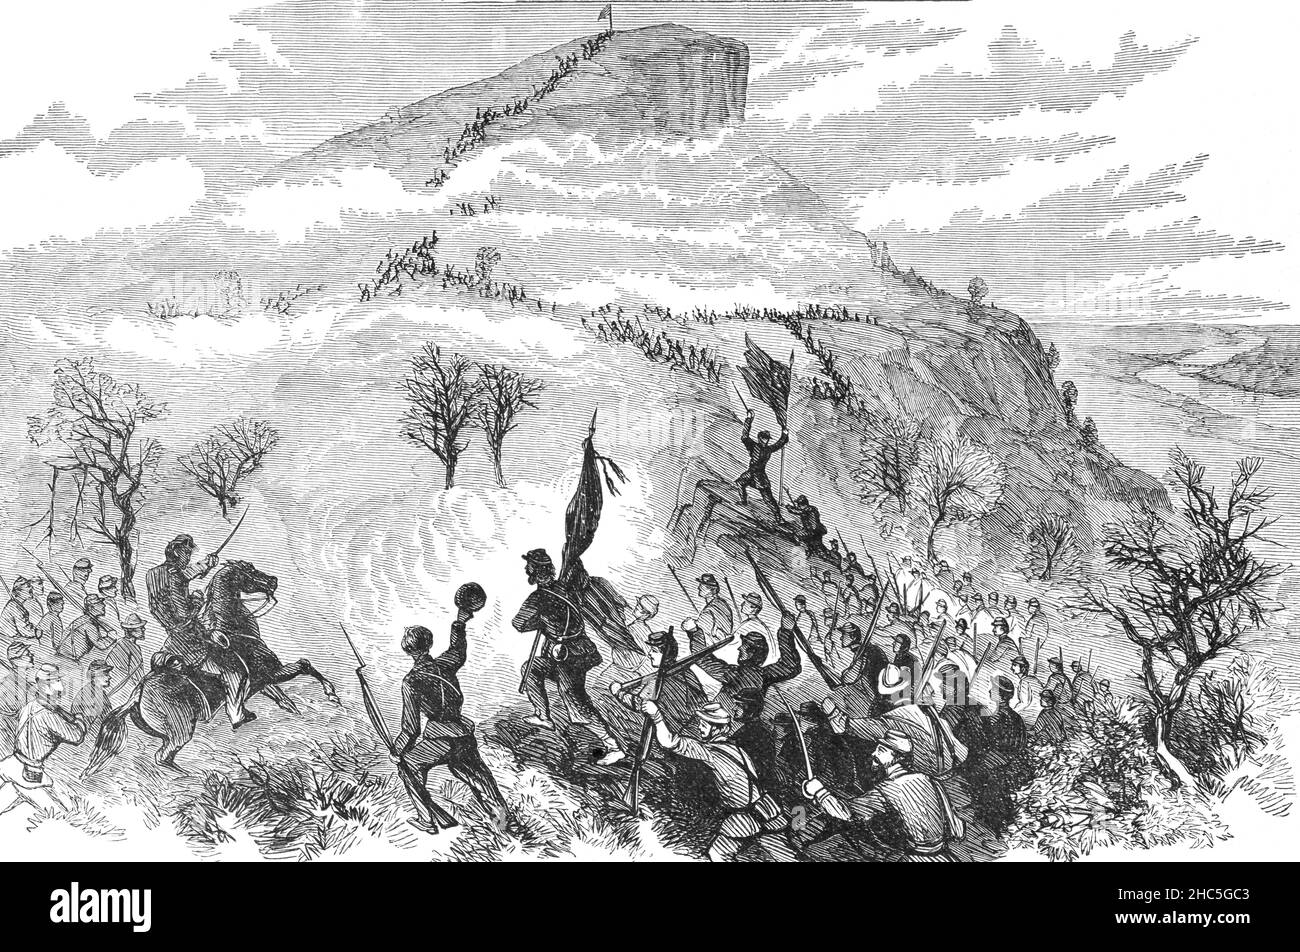 Un'illustrazione di fine 19th secolo della battaglia di Lookout Mountain è stata combattuta 24 novembre 1863, come parte della campagna di Chattanooga della guerra civile americana. Le forze dell'Unione sotto il Gen. Joseph Hooker assalirono Lookout Mountain, Chattanooga, Tennessee, e sconfissero le forze confederate comandate dal Gen. Carter L. Stevenson. Lookout Mountain è stato un impegno nelle battaglie di Chattanooga tra la Divisione militare del Mississippi di Major Gen. Ulysses S. Grant e l'Esercito confederato del Tennessee, comandato dal Gen. Braxton Bragg. Foto Stock